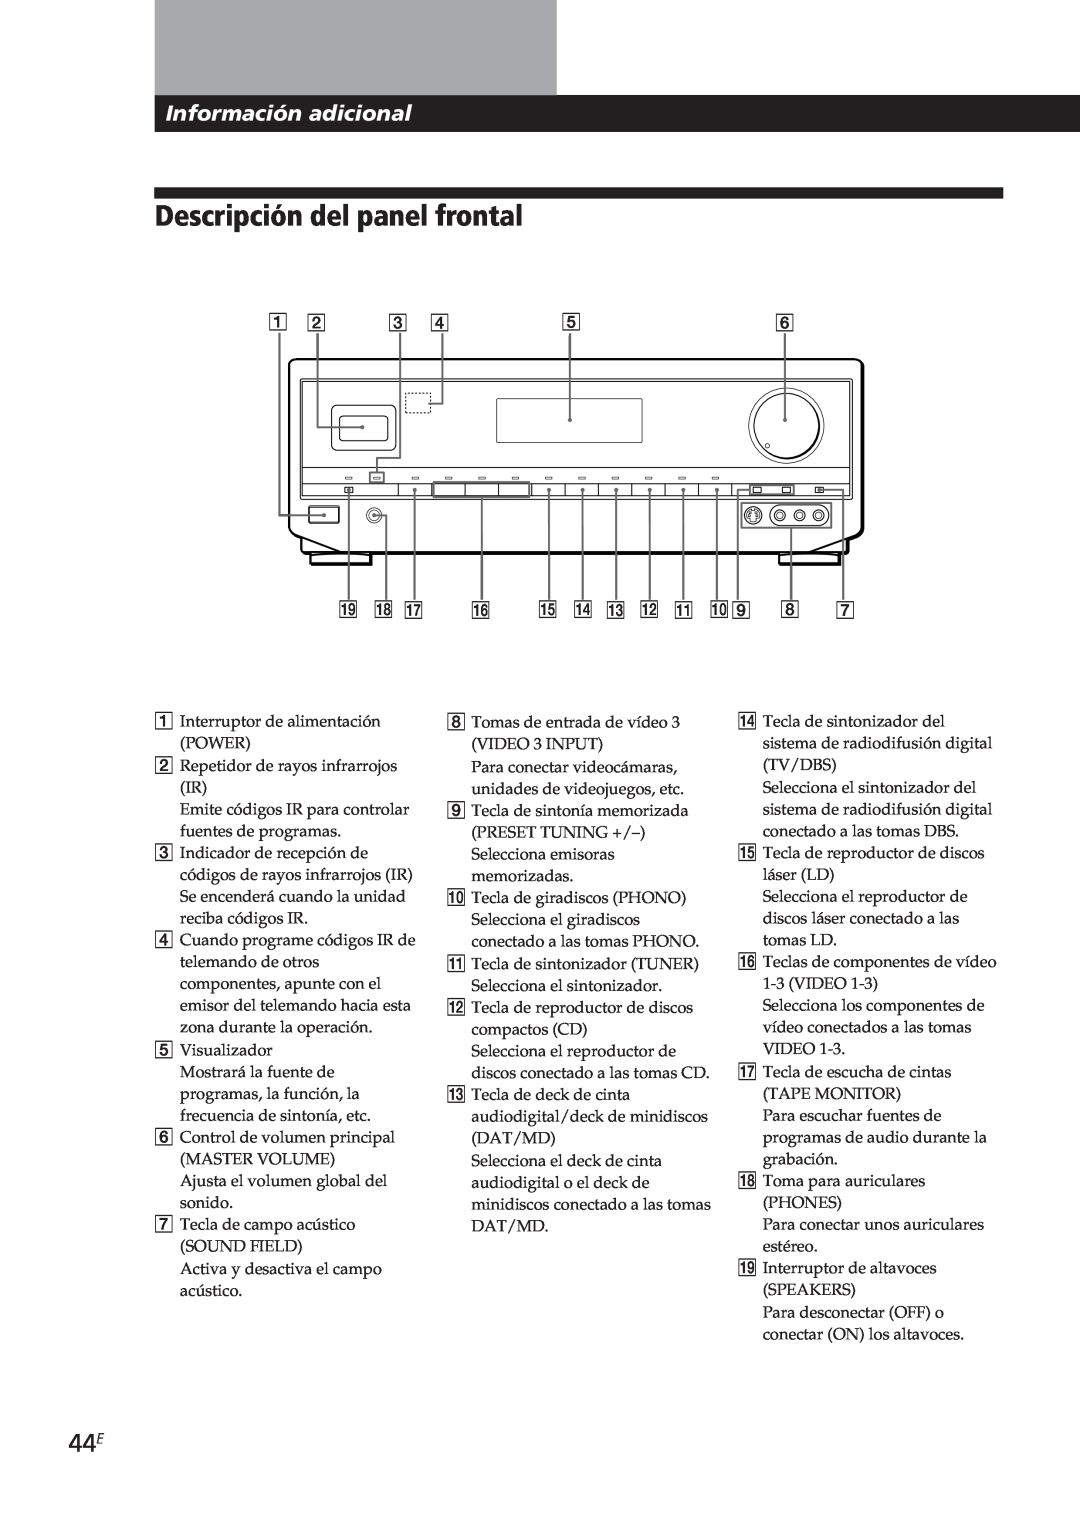 Sony STR-DE905G, STR-DE805G manual Descripción del panel frontal, Información adicional 